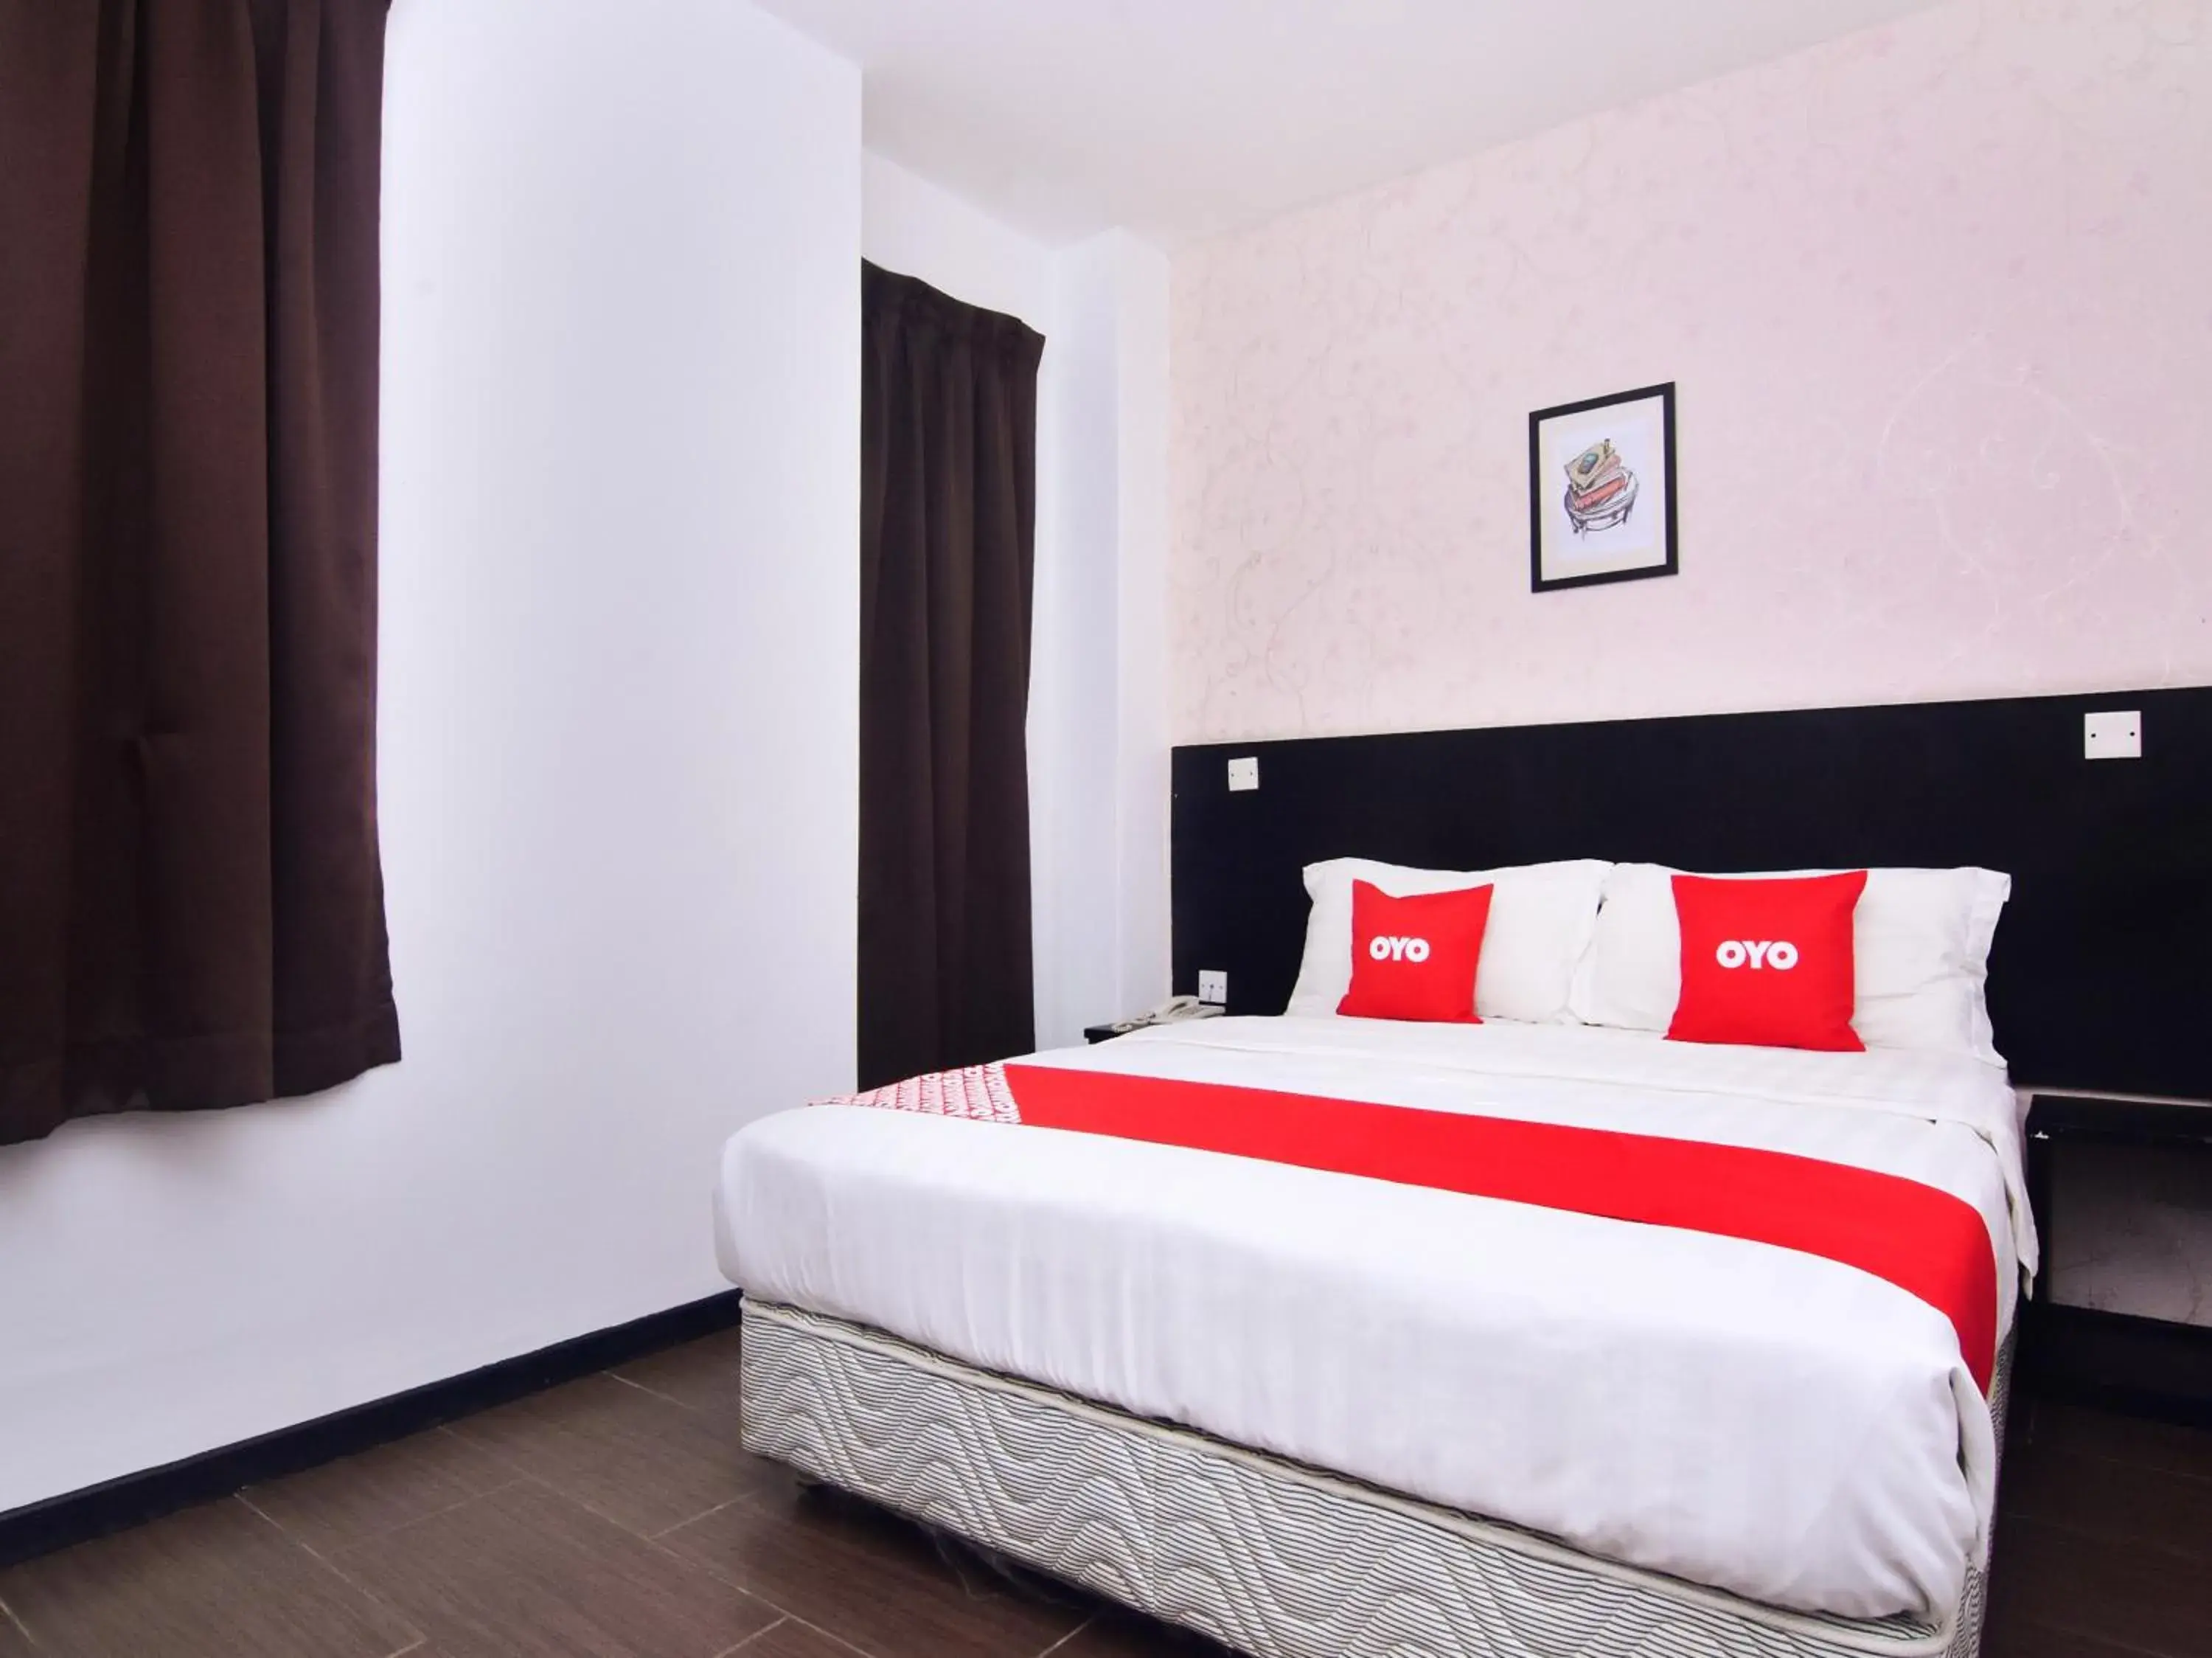 Bedroom, Bed in OYO 43959 Astana Hotel